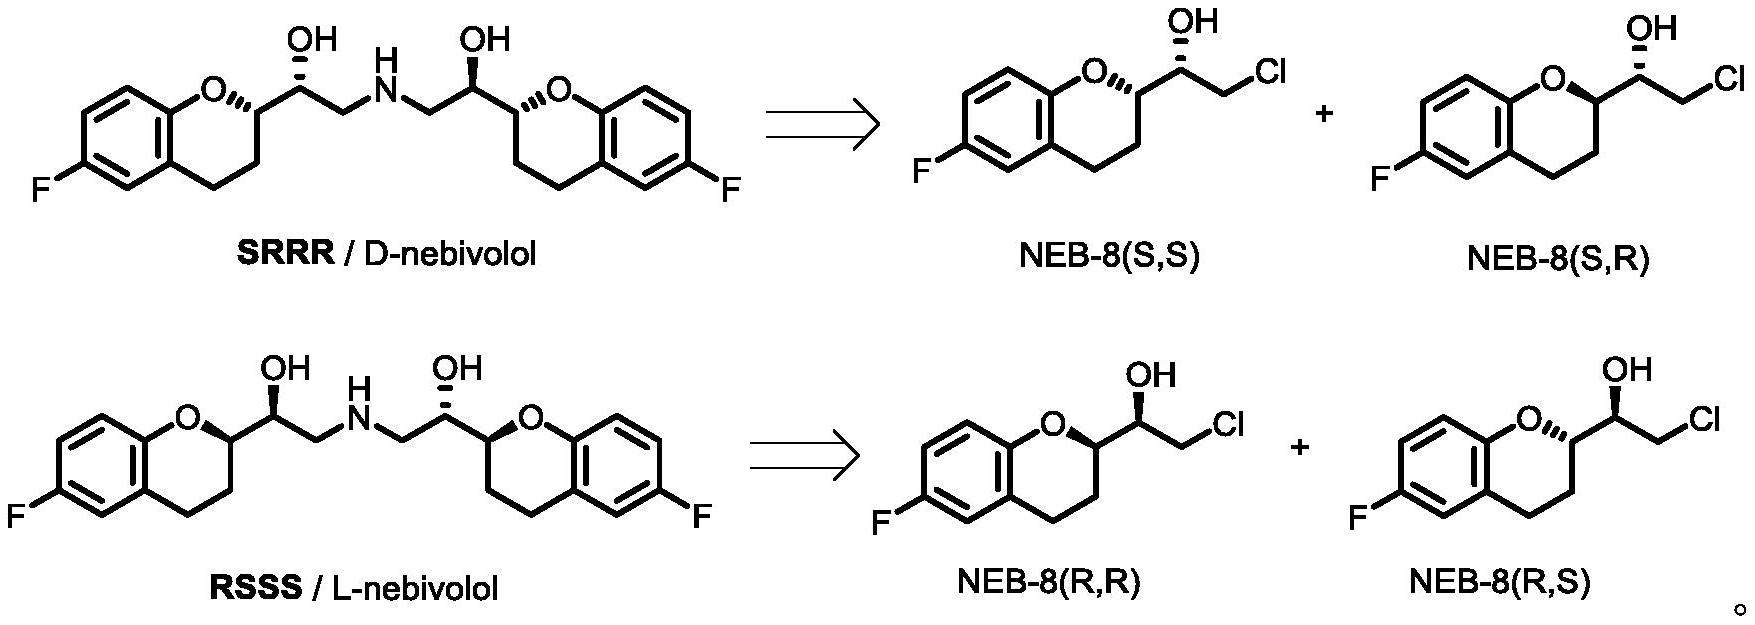 一种应用酮还原酶MrADH不对称合成NEB-8的方法